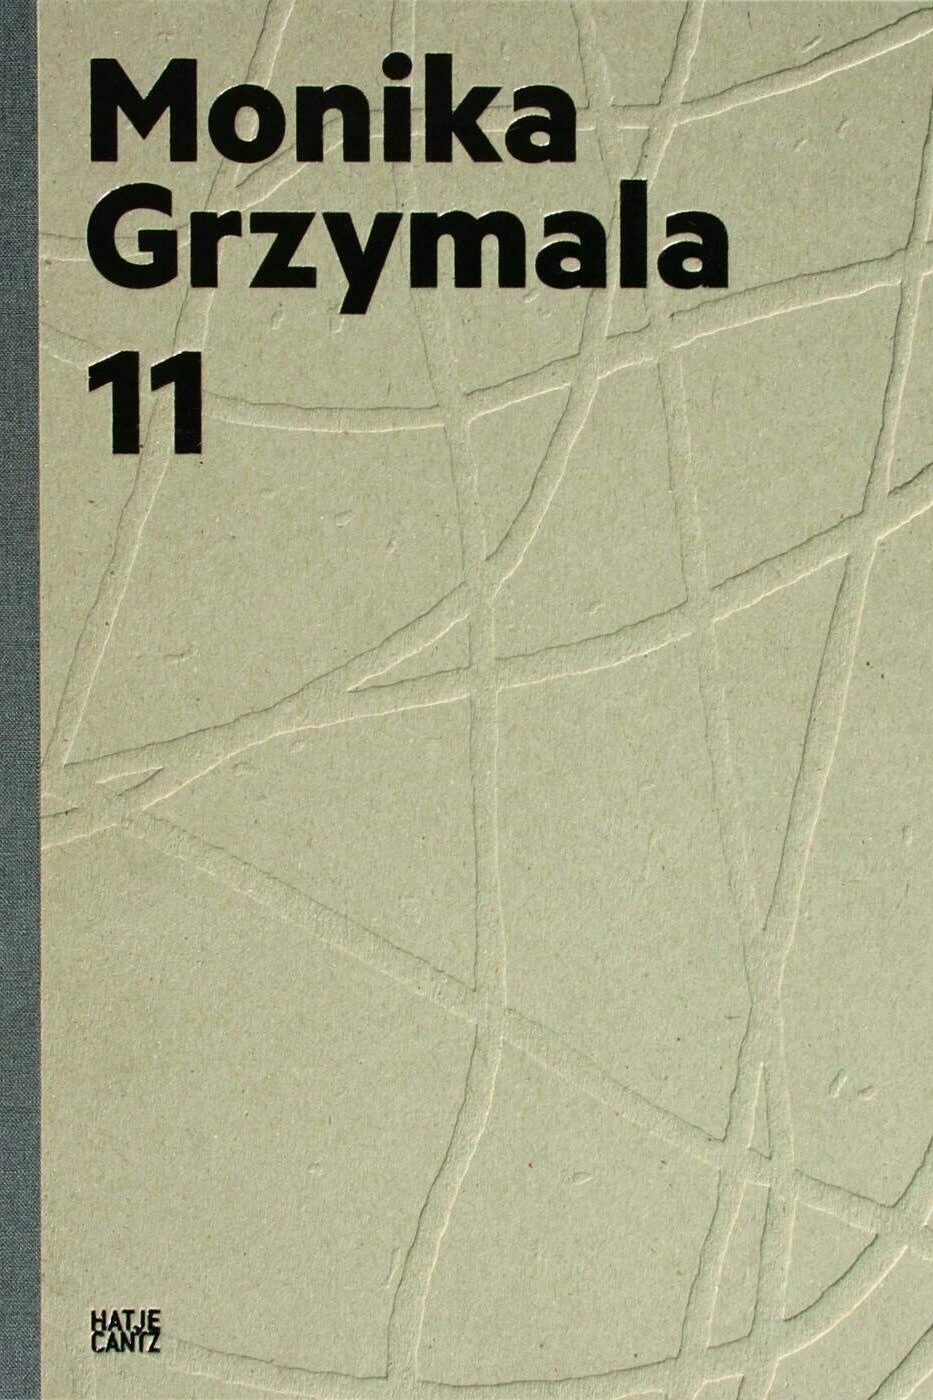 monika grzymala. 11 works 2000-2011, elena winkel, kunstbuch bildband fotobuch